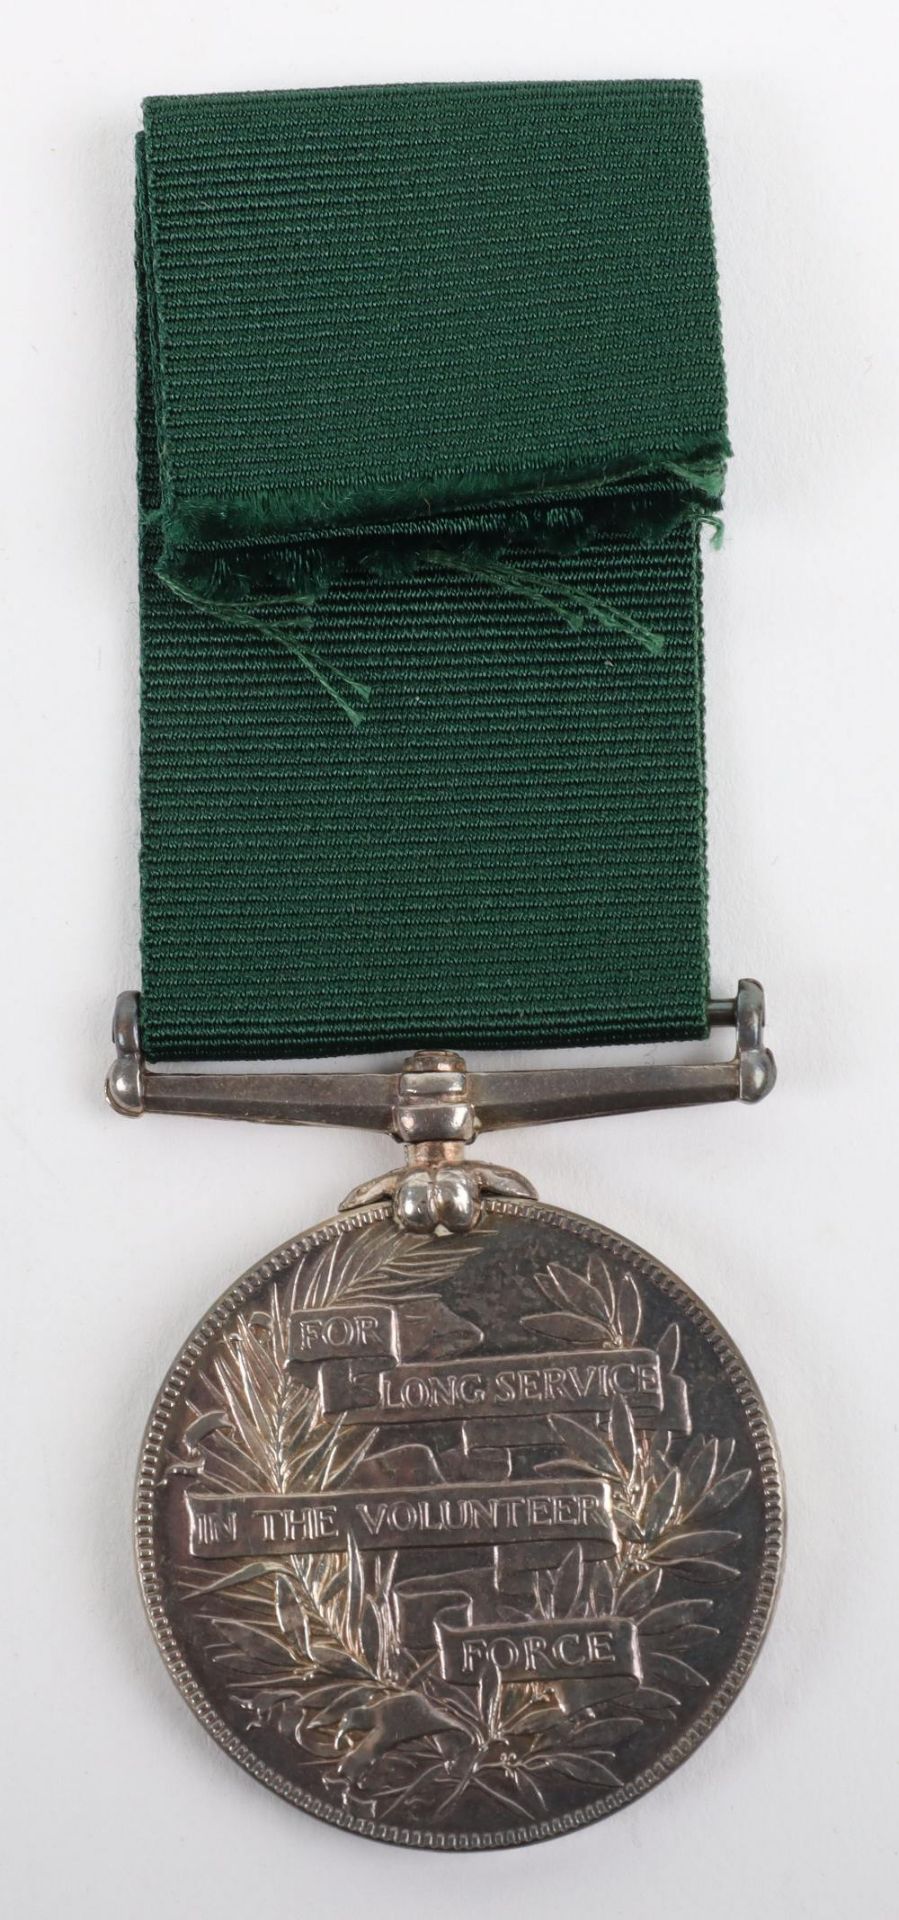 Victorian Volunteer Force Long Service Medal Berwick-on-Tweed Volunteer Artillery - Image 2 of 3